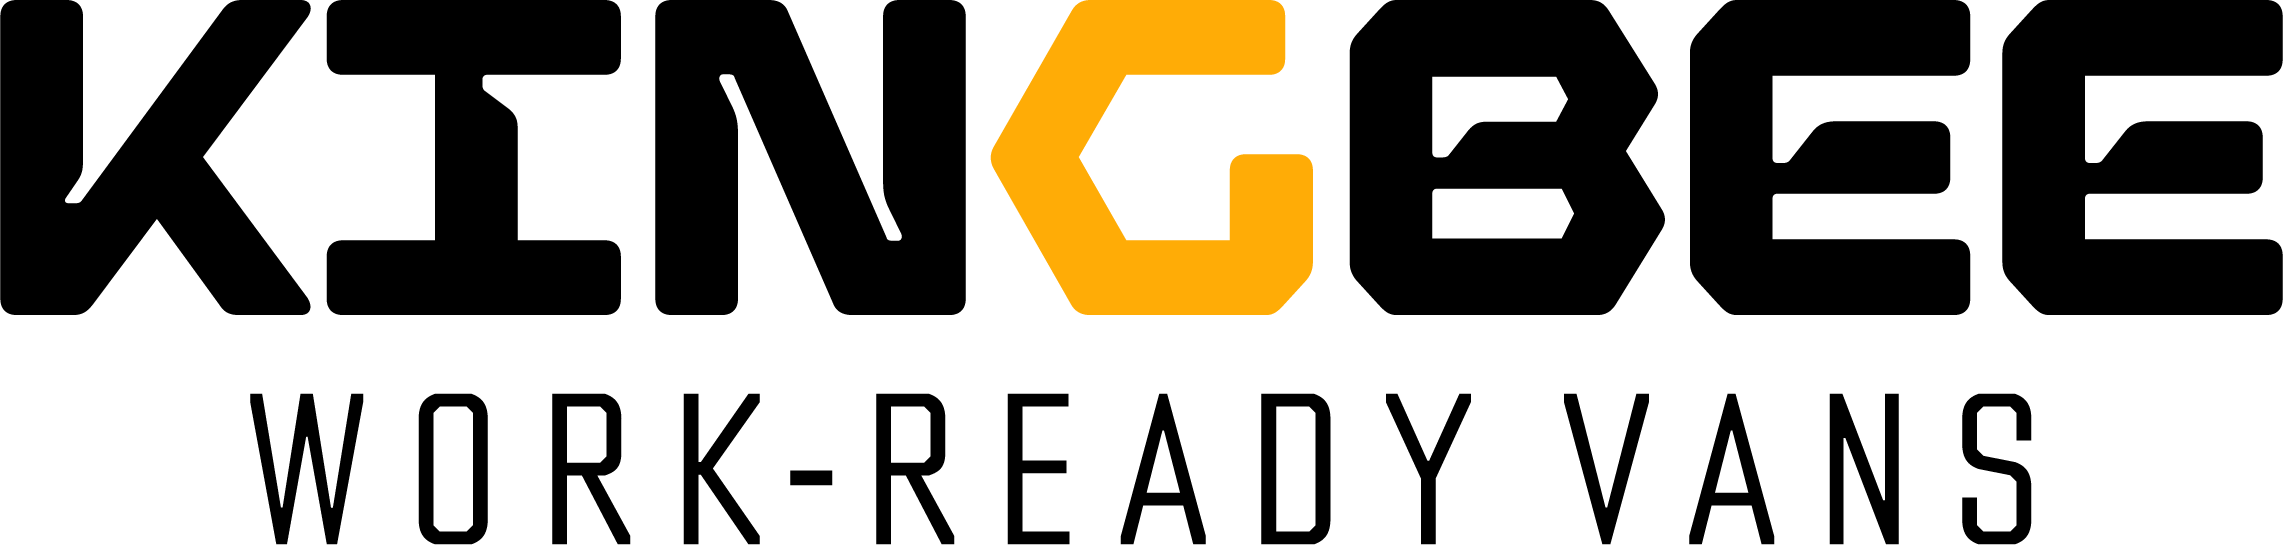 Kingbee Rentals Logo.png